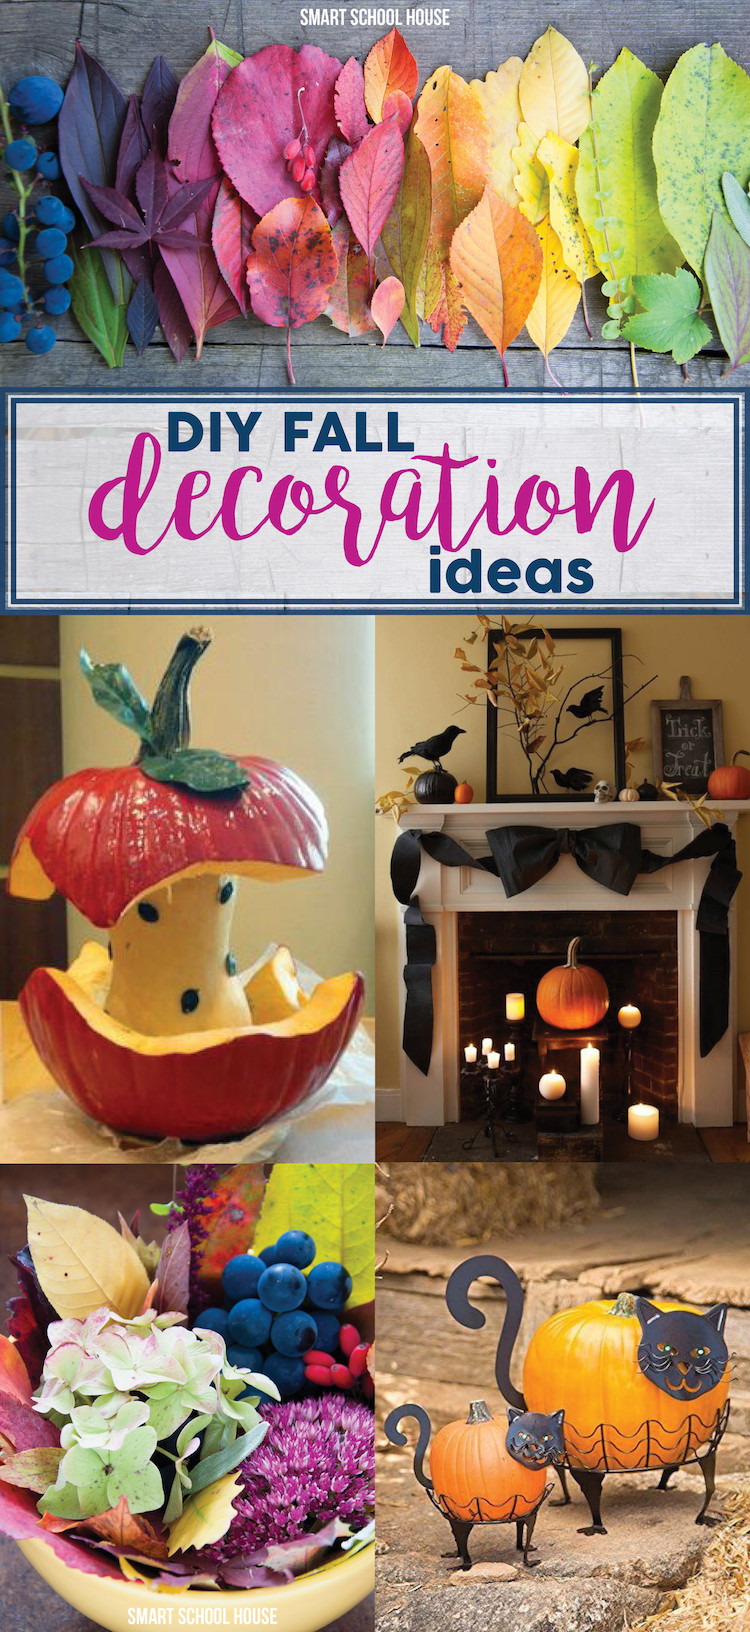 Fall Decorating Ideas DIY
 DIY Fall Decoration Ideas Smart School House